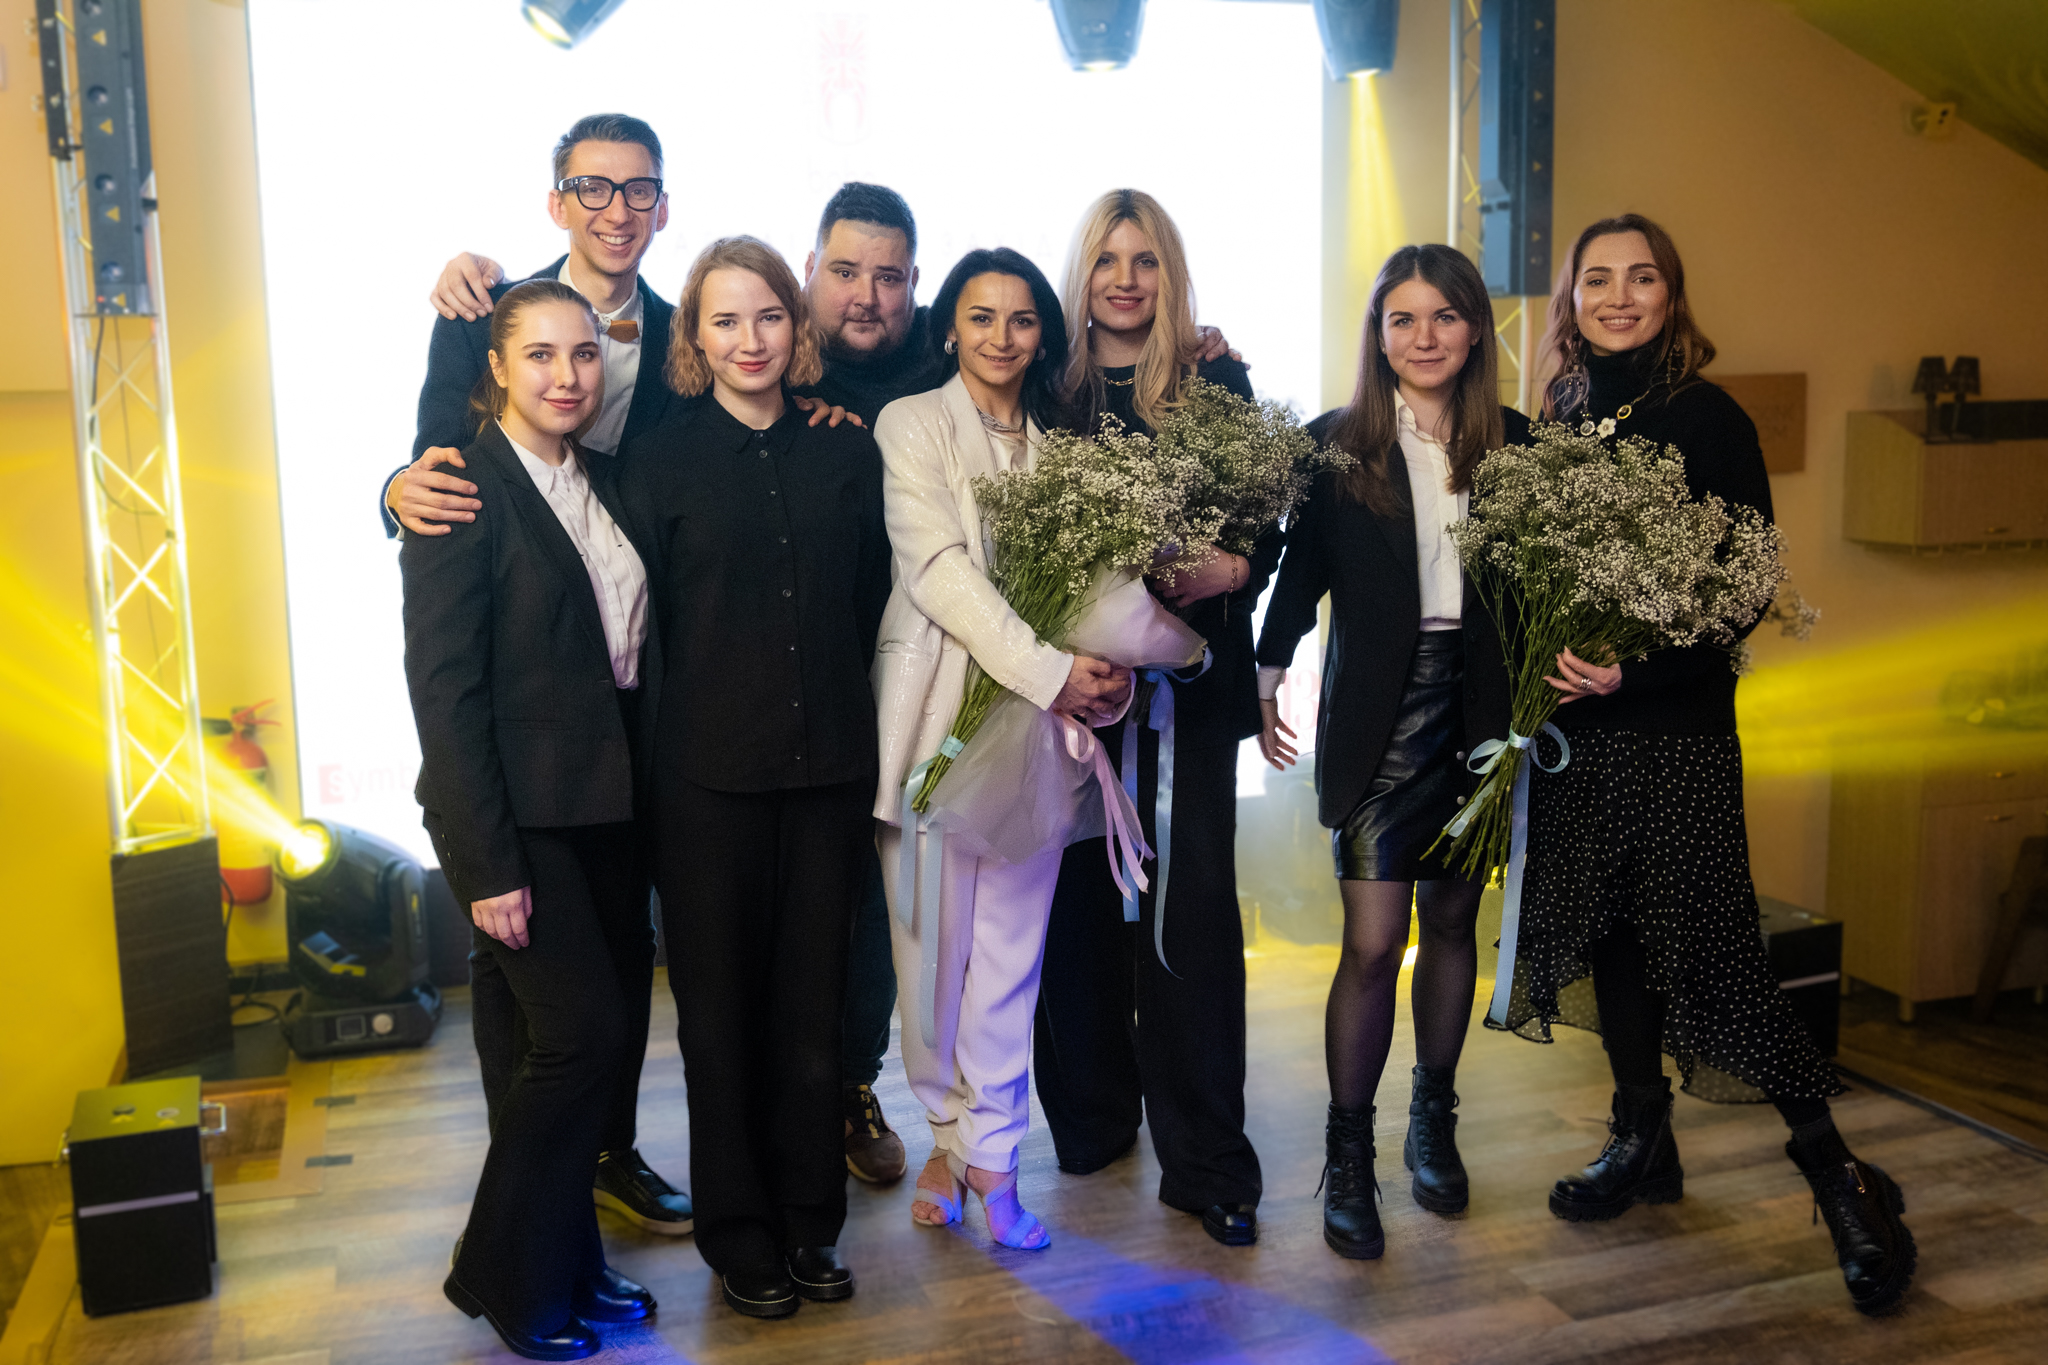 Десята зустріч жіночого клубу Ілони Гвоздьової в Києві